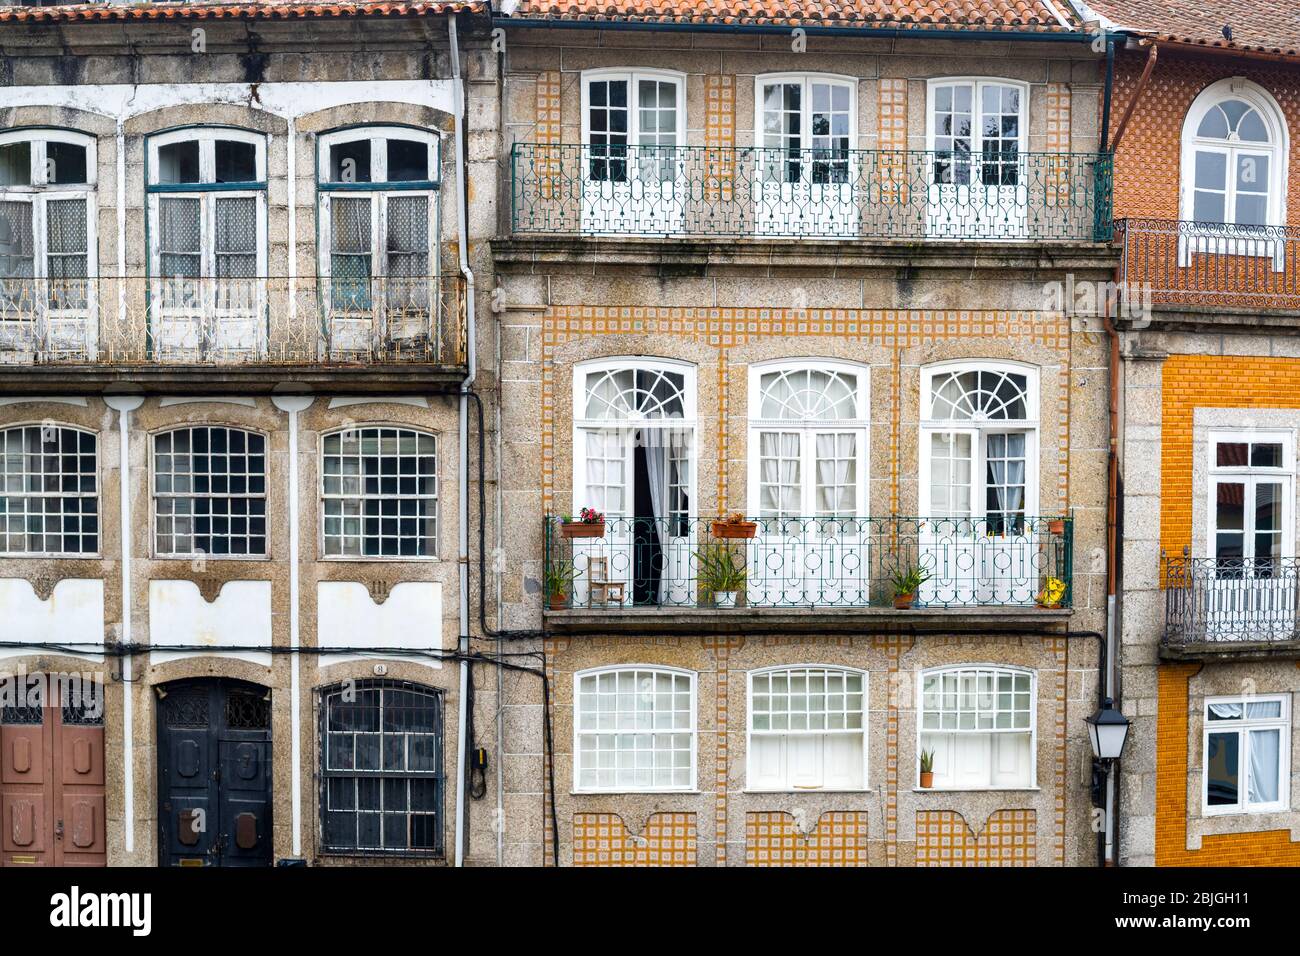 Architecture typique portugaise - appartements avec balcon dans la ville pittoresque de Guimares dans le nord du Portugal Banque D'Images